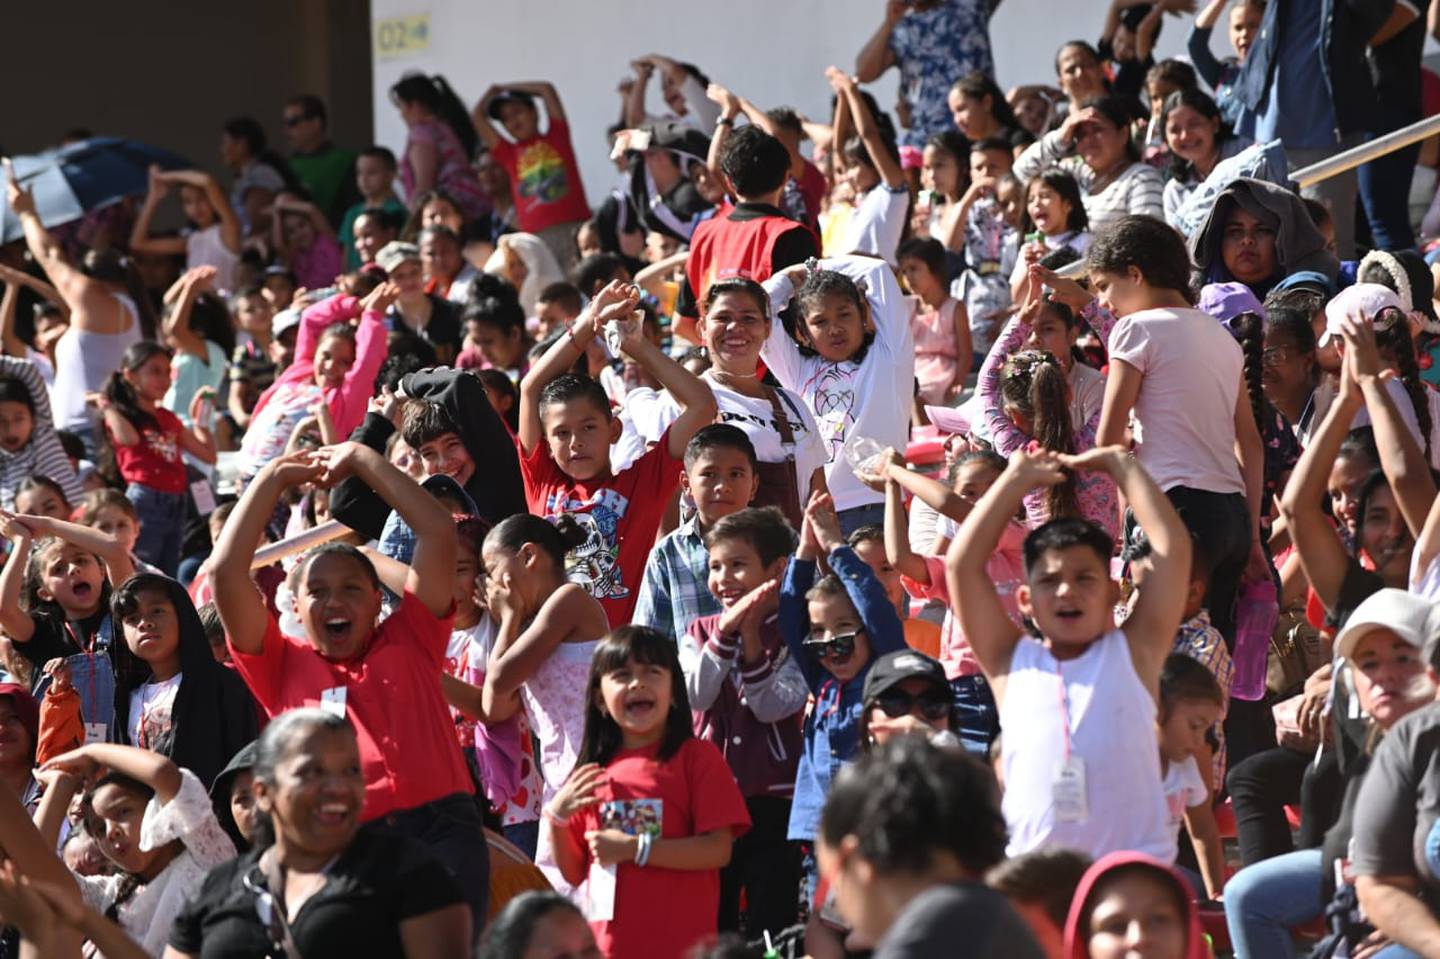 Niños disfrutando de la fiesta organizada por la Asociación Obras del Espíritu Santo. (Foto Albert Marín)